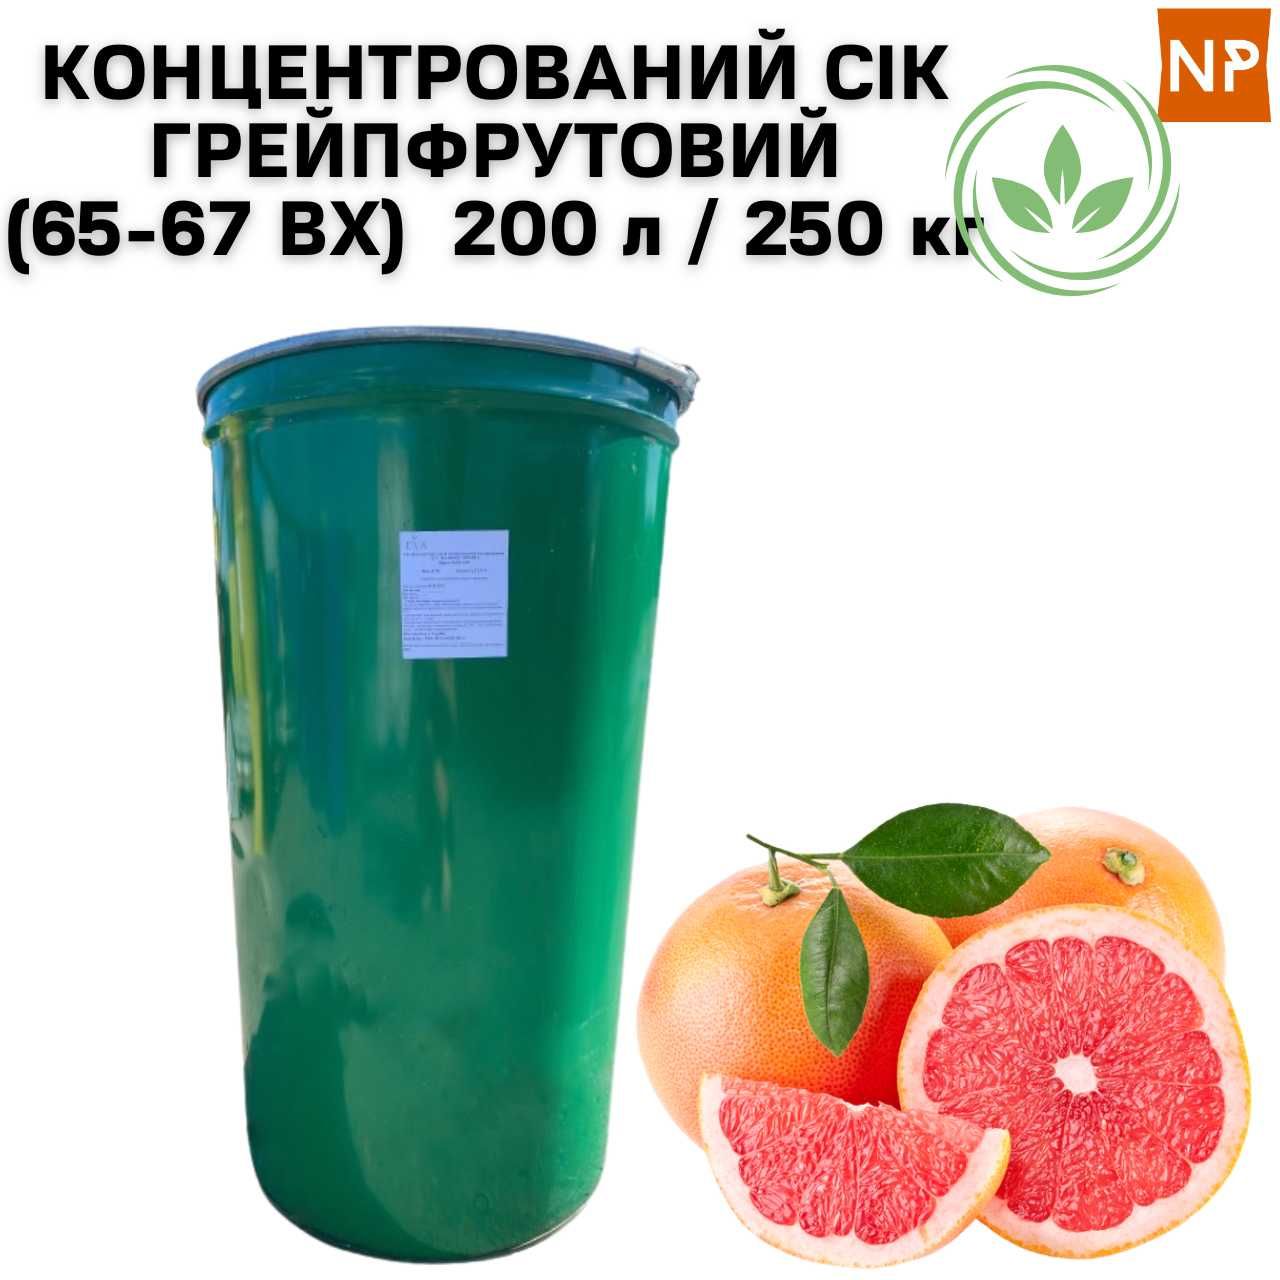 Конц. Грейпфрутовый Сок неосветлённый (ВХ 65-67), бочка 200 л / 250 кг